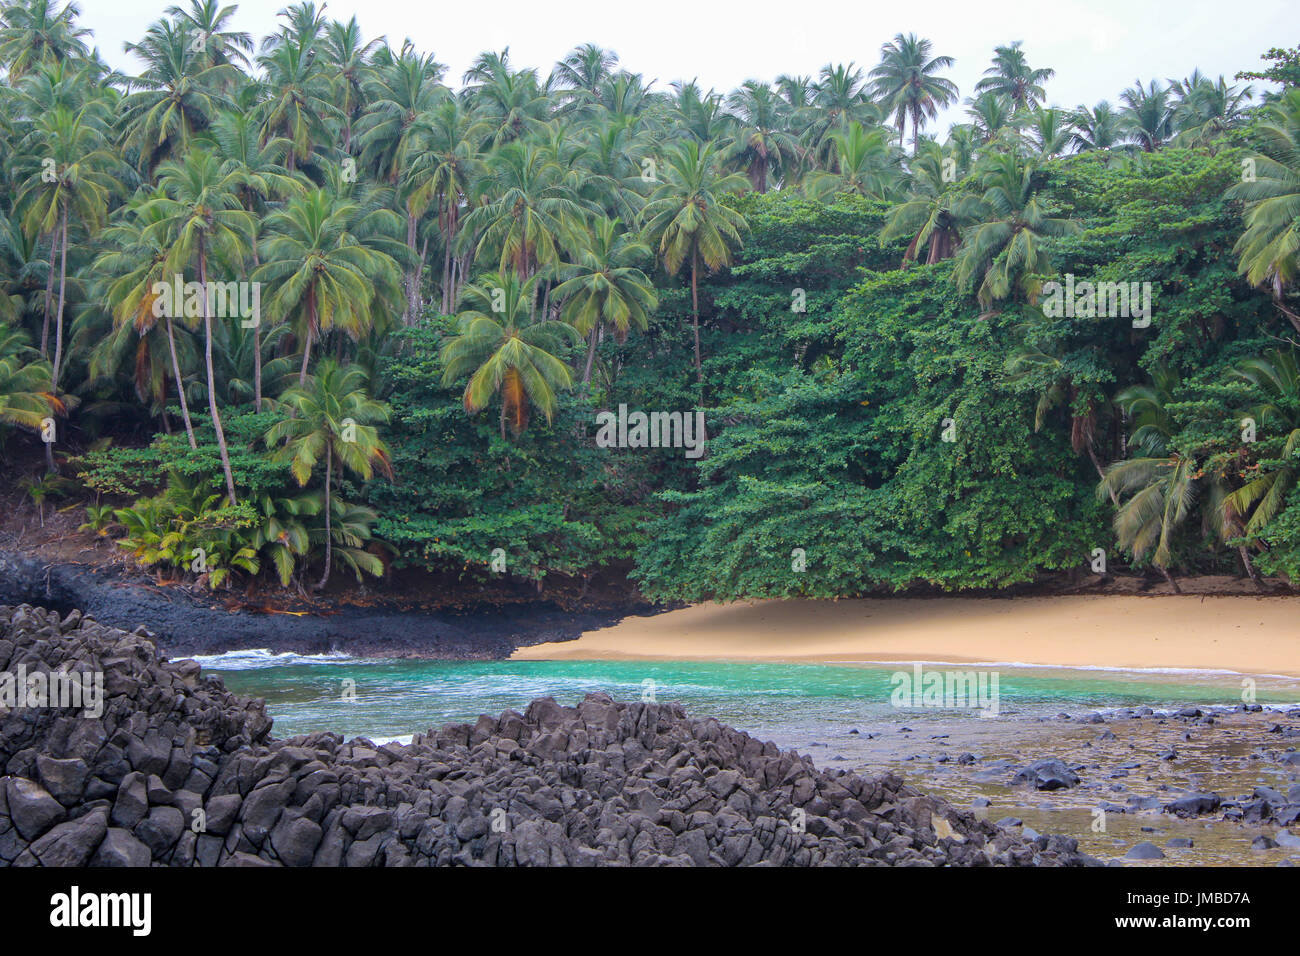 Der schöne Strand Piscina in Insel von São Tomé und Príncipe - Afrika Stockfoto